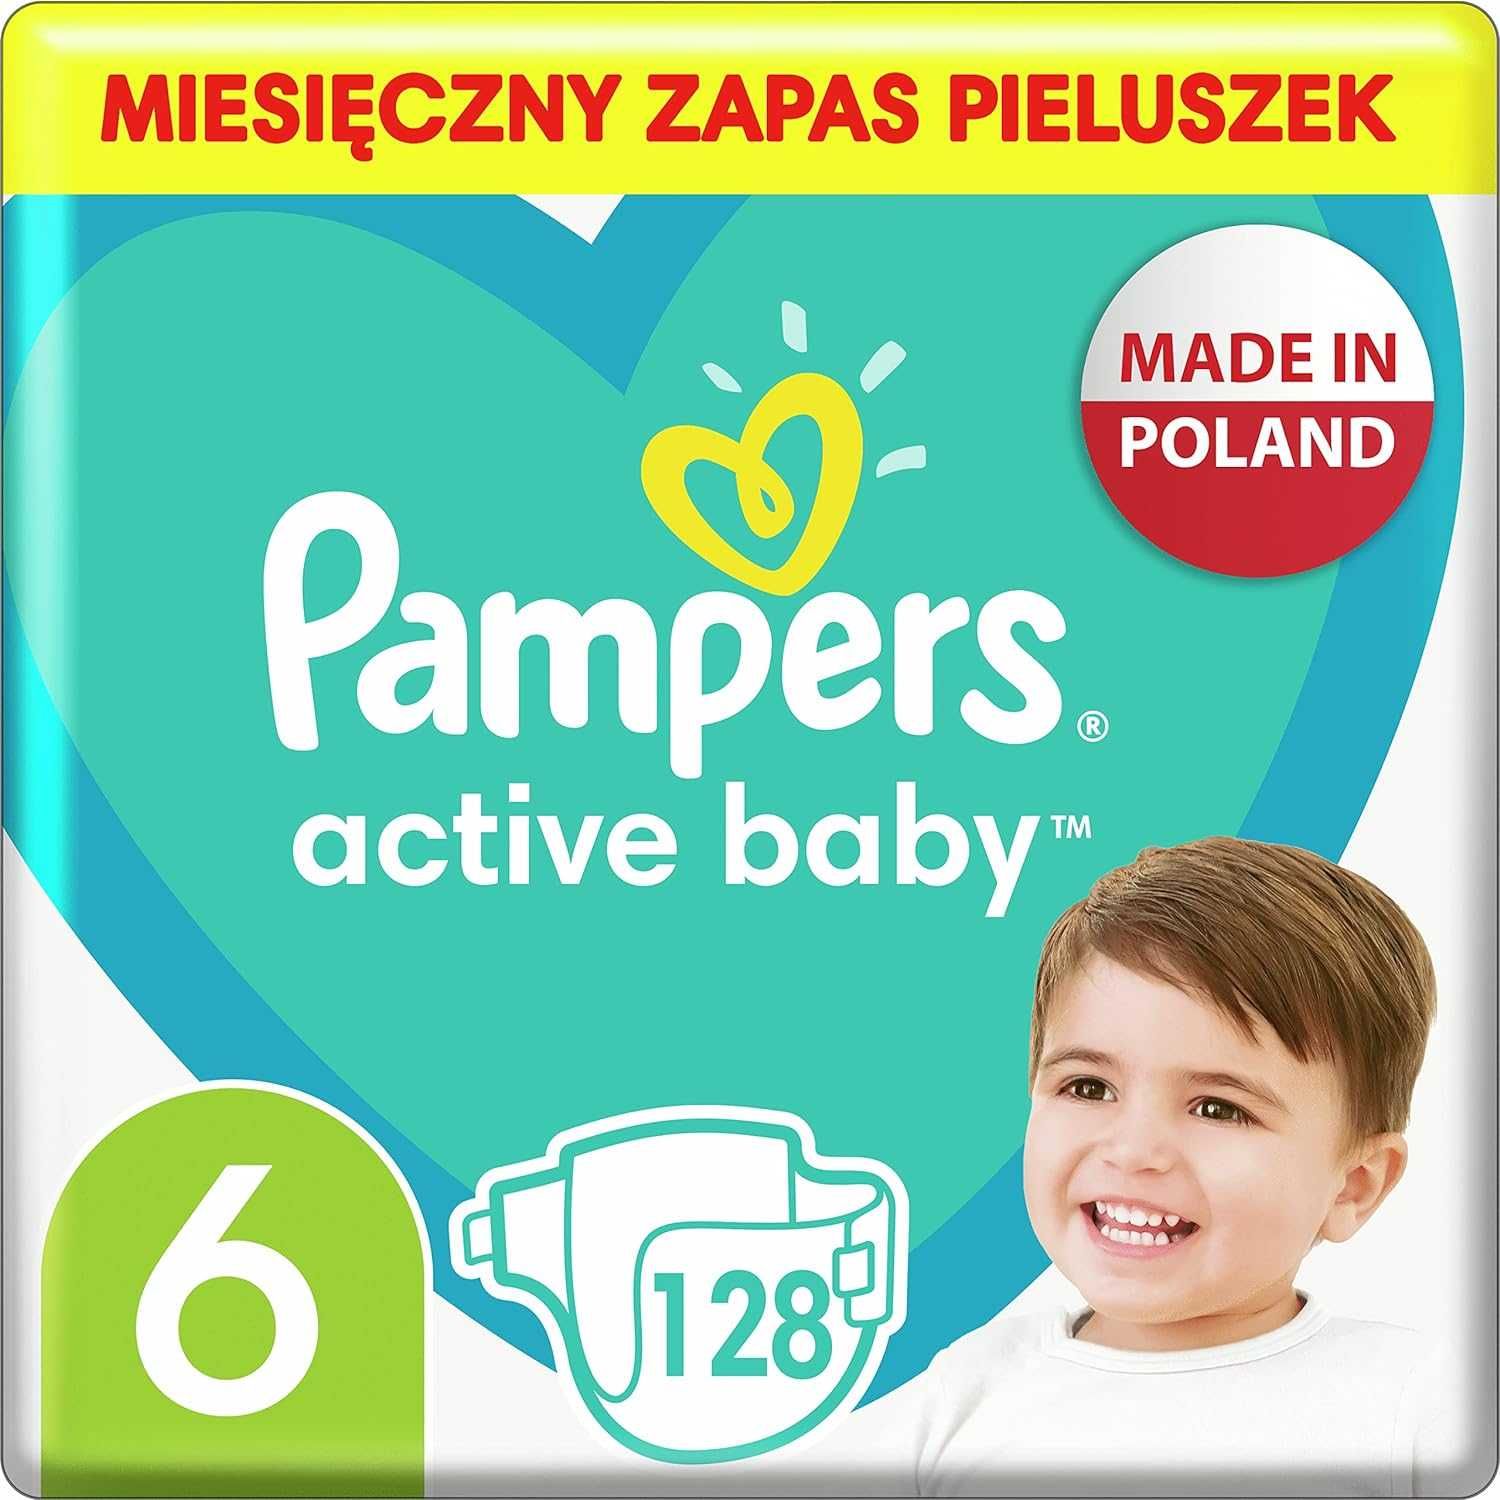 Pampers Pieluchy Rozmiar 6 (13-18kg), Active Baby Pieluszki, 128 Sztuk